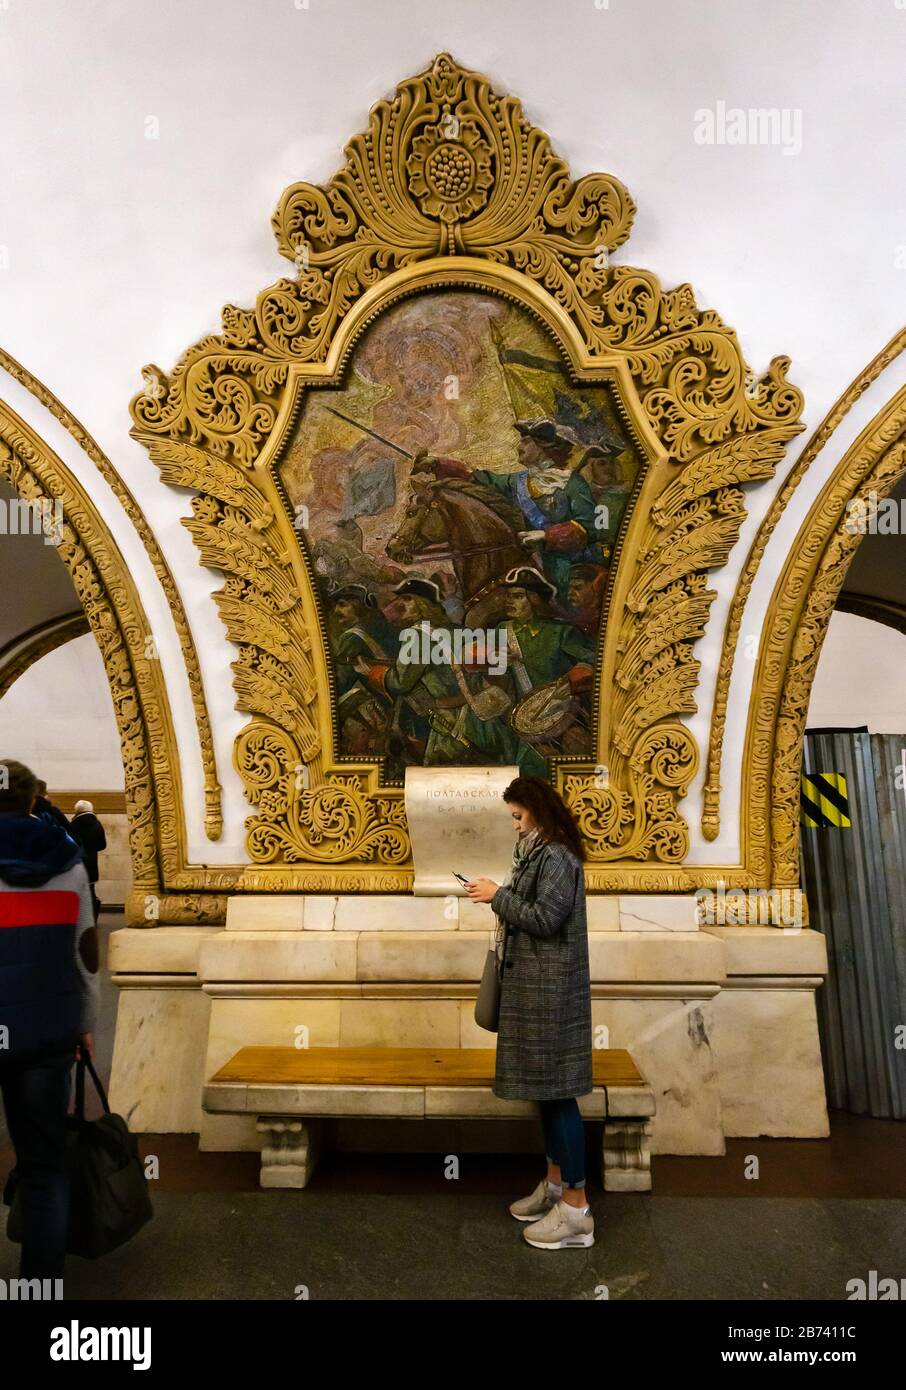 Ornato mosaico opere d'arte decorazione di A.V. Myzin celebra l'unità russo-Ucraina, stazione della metropolitana Kiyevskaya, metropolitana o metropolitana di Mosca, Russia Foto Stock